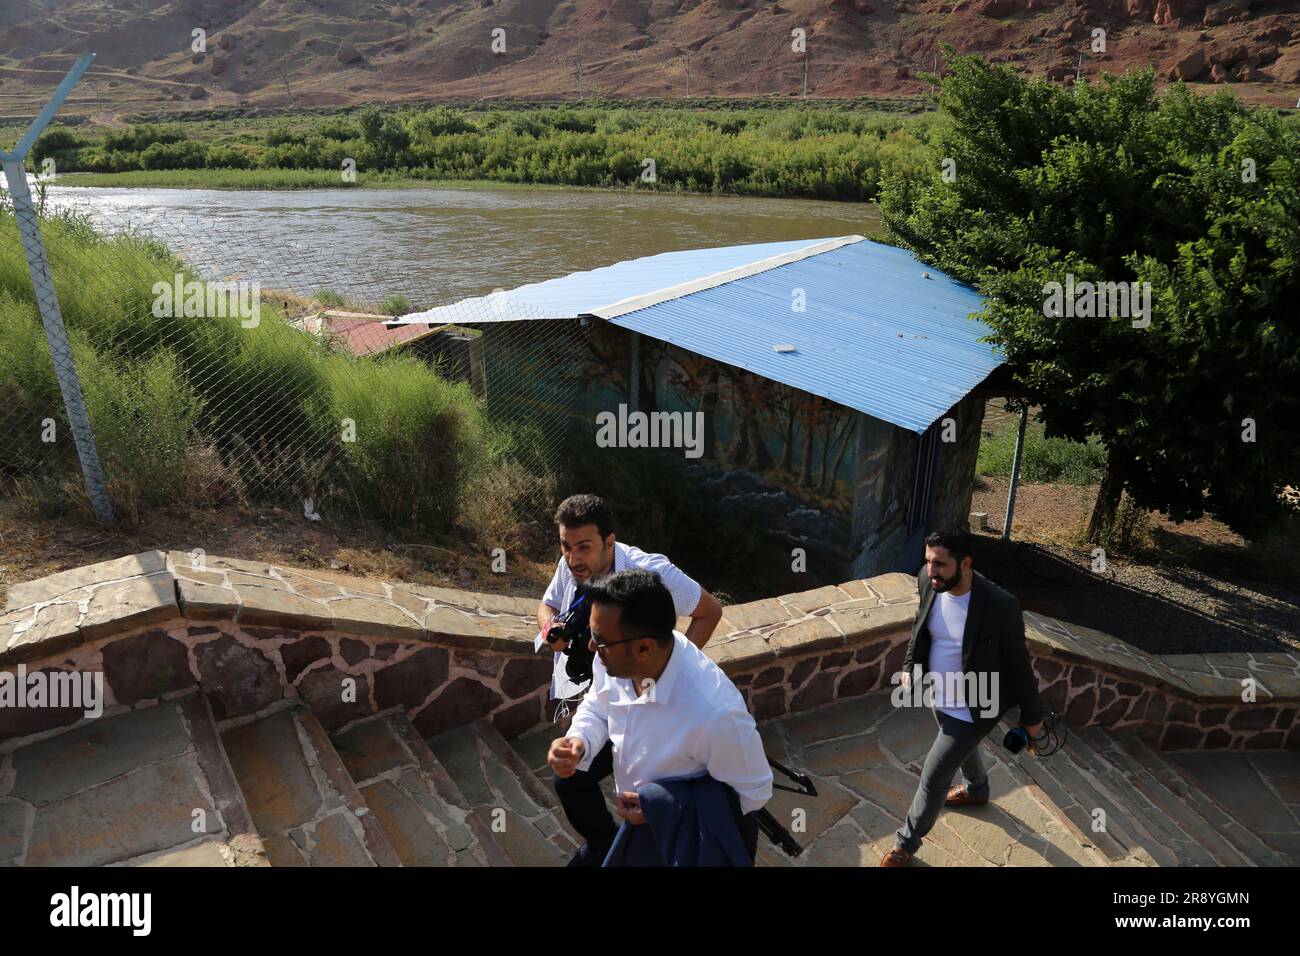 21 de junio de 2023, Jolfa, Azerbaiyán Oriental, Irán: Tres hombres caminan cerca del río Aras en la frontera entre el noroeste de Irán y Azerbaiyán. El Aras (los Araks, Arax, Araxes, o Araz) es un río en el Cáucaso. Se levanta en el este de Turquía y fluye a lo largo de las fronteras entre Turquía y Armenia, entre Turquía y el exclave de Najicheván de Azerbaiyán, entre Irán y Azerbaiyán y Armenia, y, finalmente, a través de Azerbaiyán, donde desemboca en el río Kura. Drena el lado sur de las montañas del Cáucaso Menor, mientras que el Kura drena el lado norte del Cáucaso Menor. El total del río Foto de stock